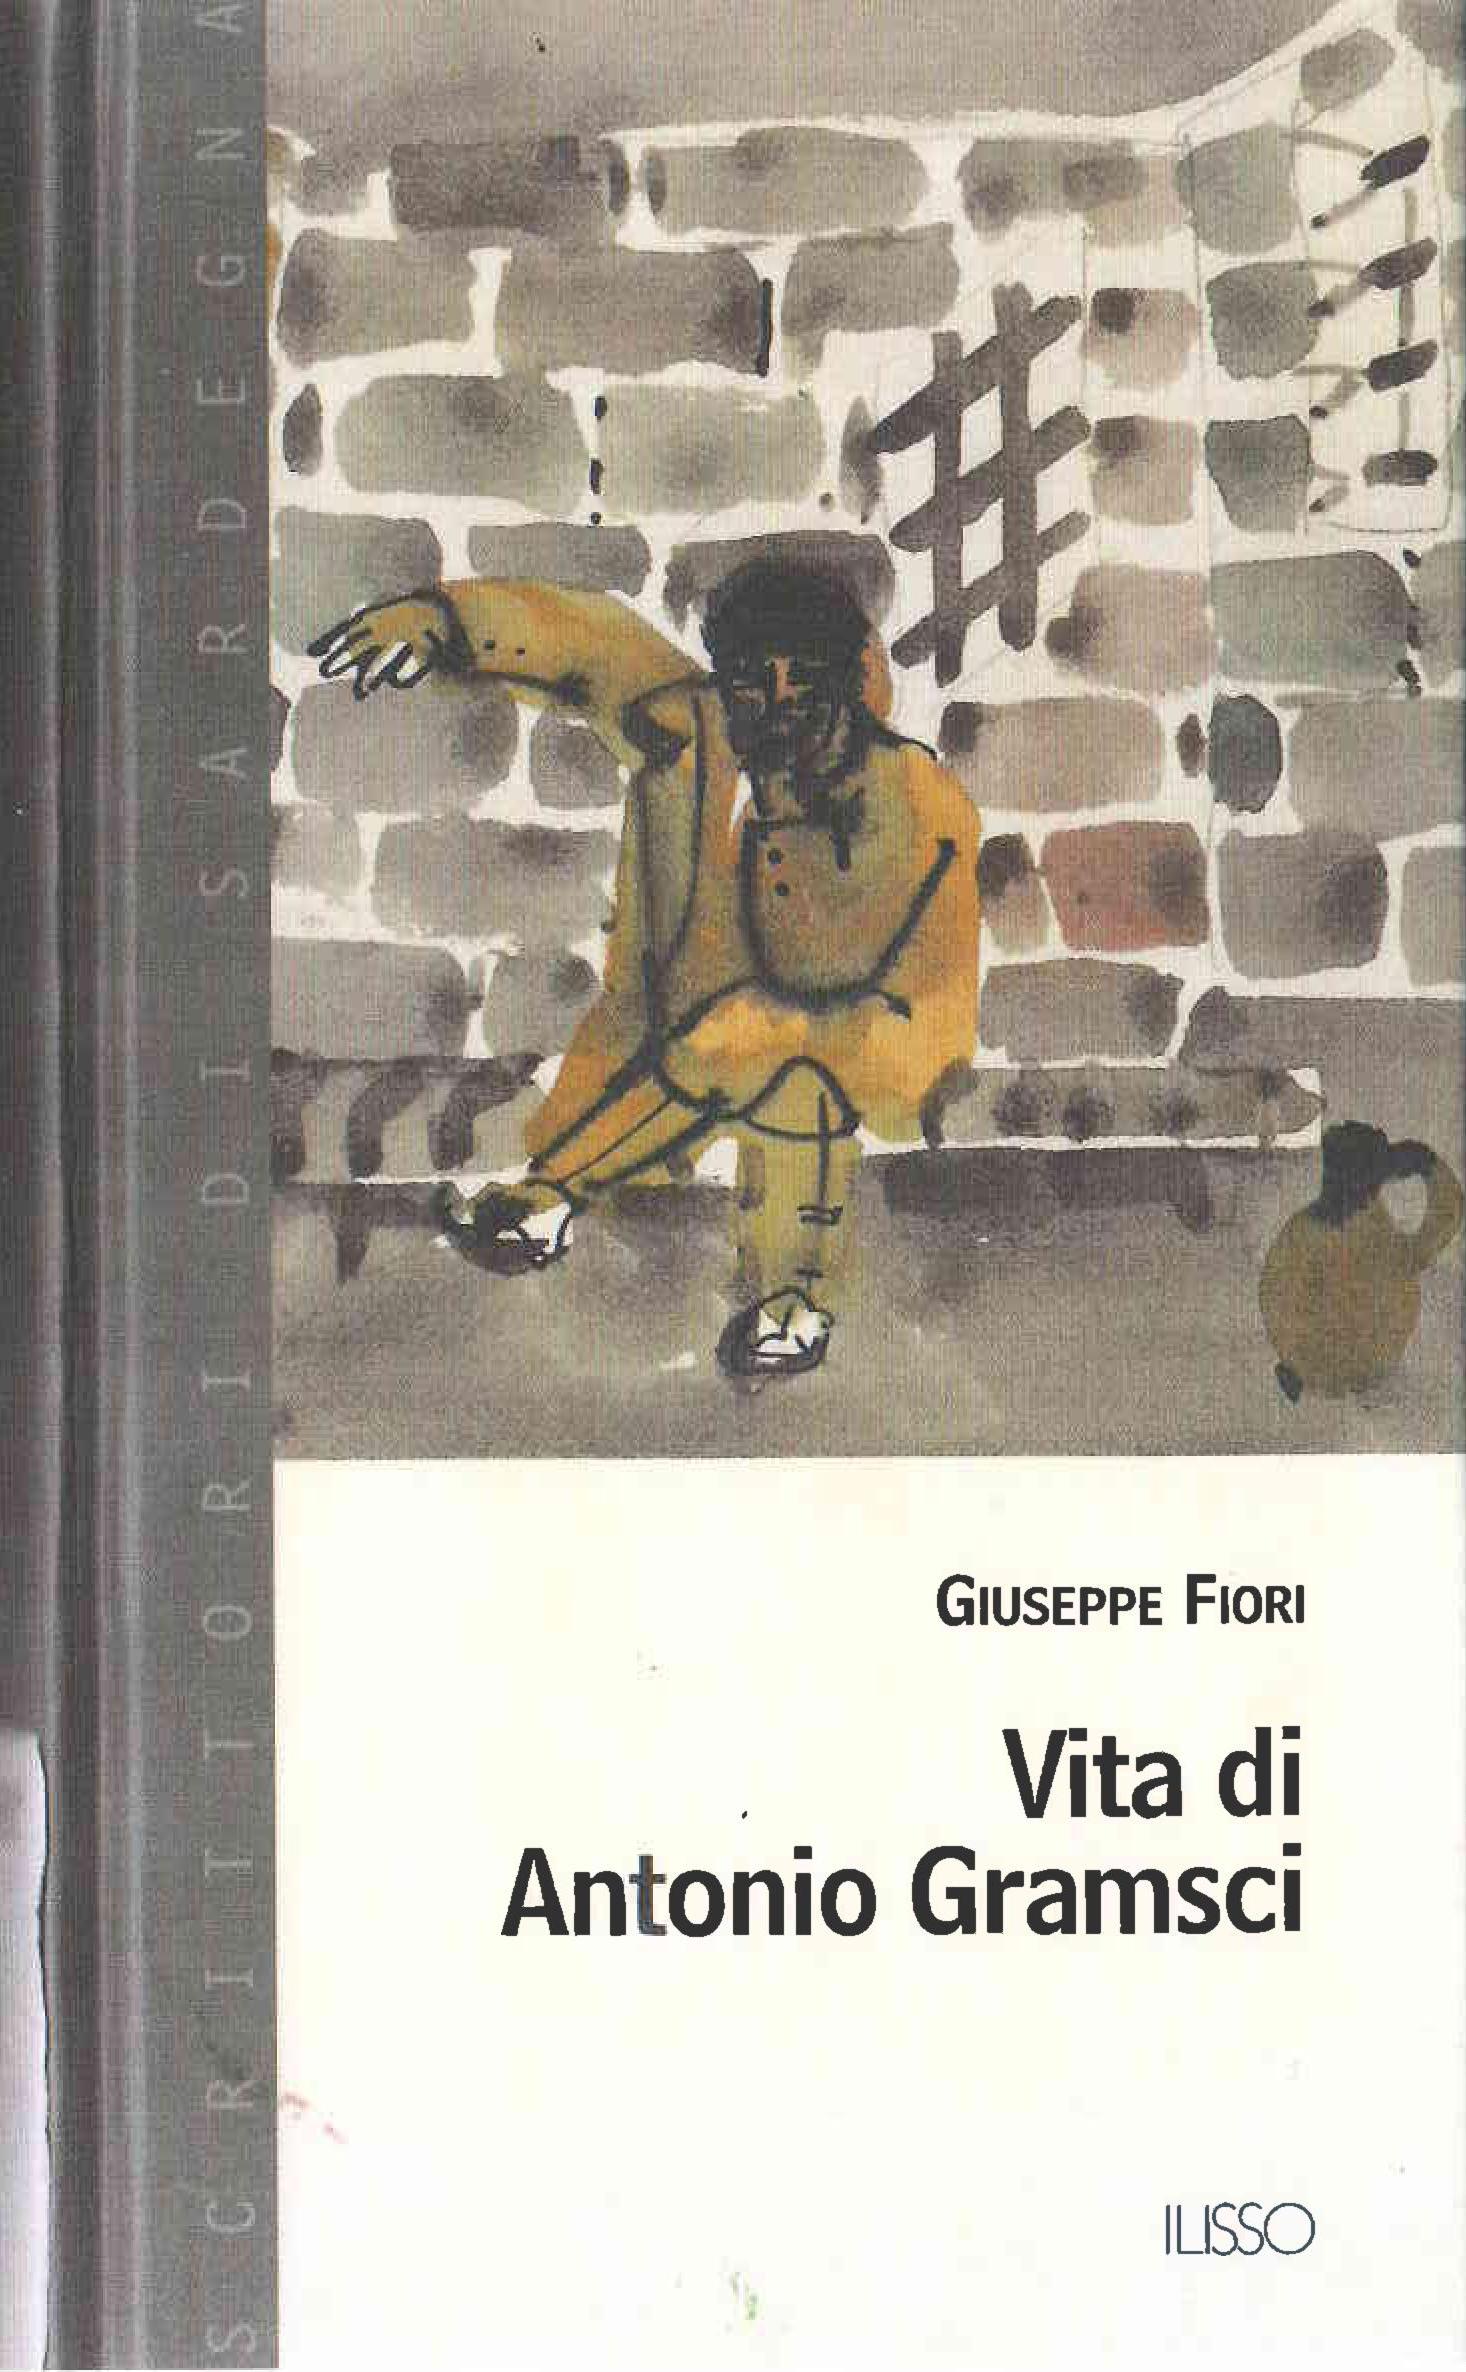 Copertina del testo:Vita di Antonio Gramsci di Giuseppe Fiori